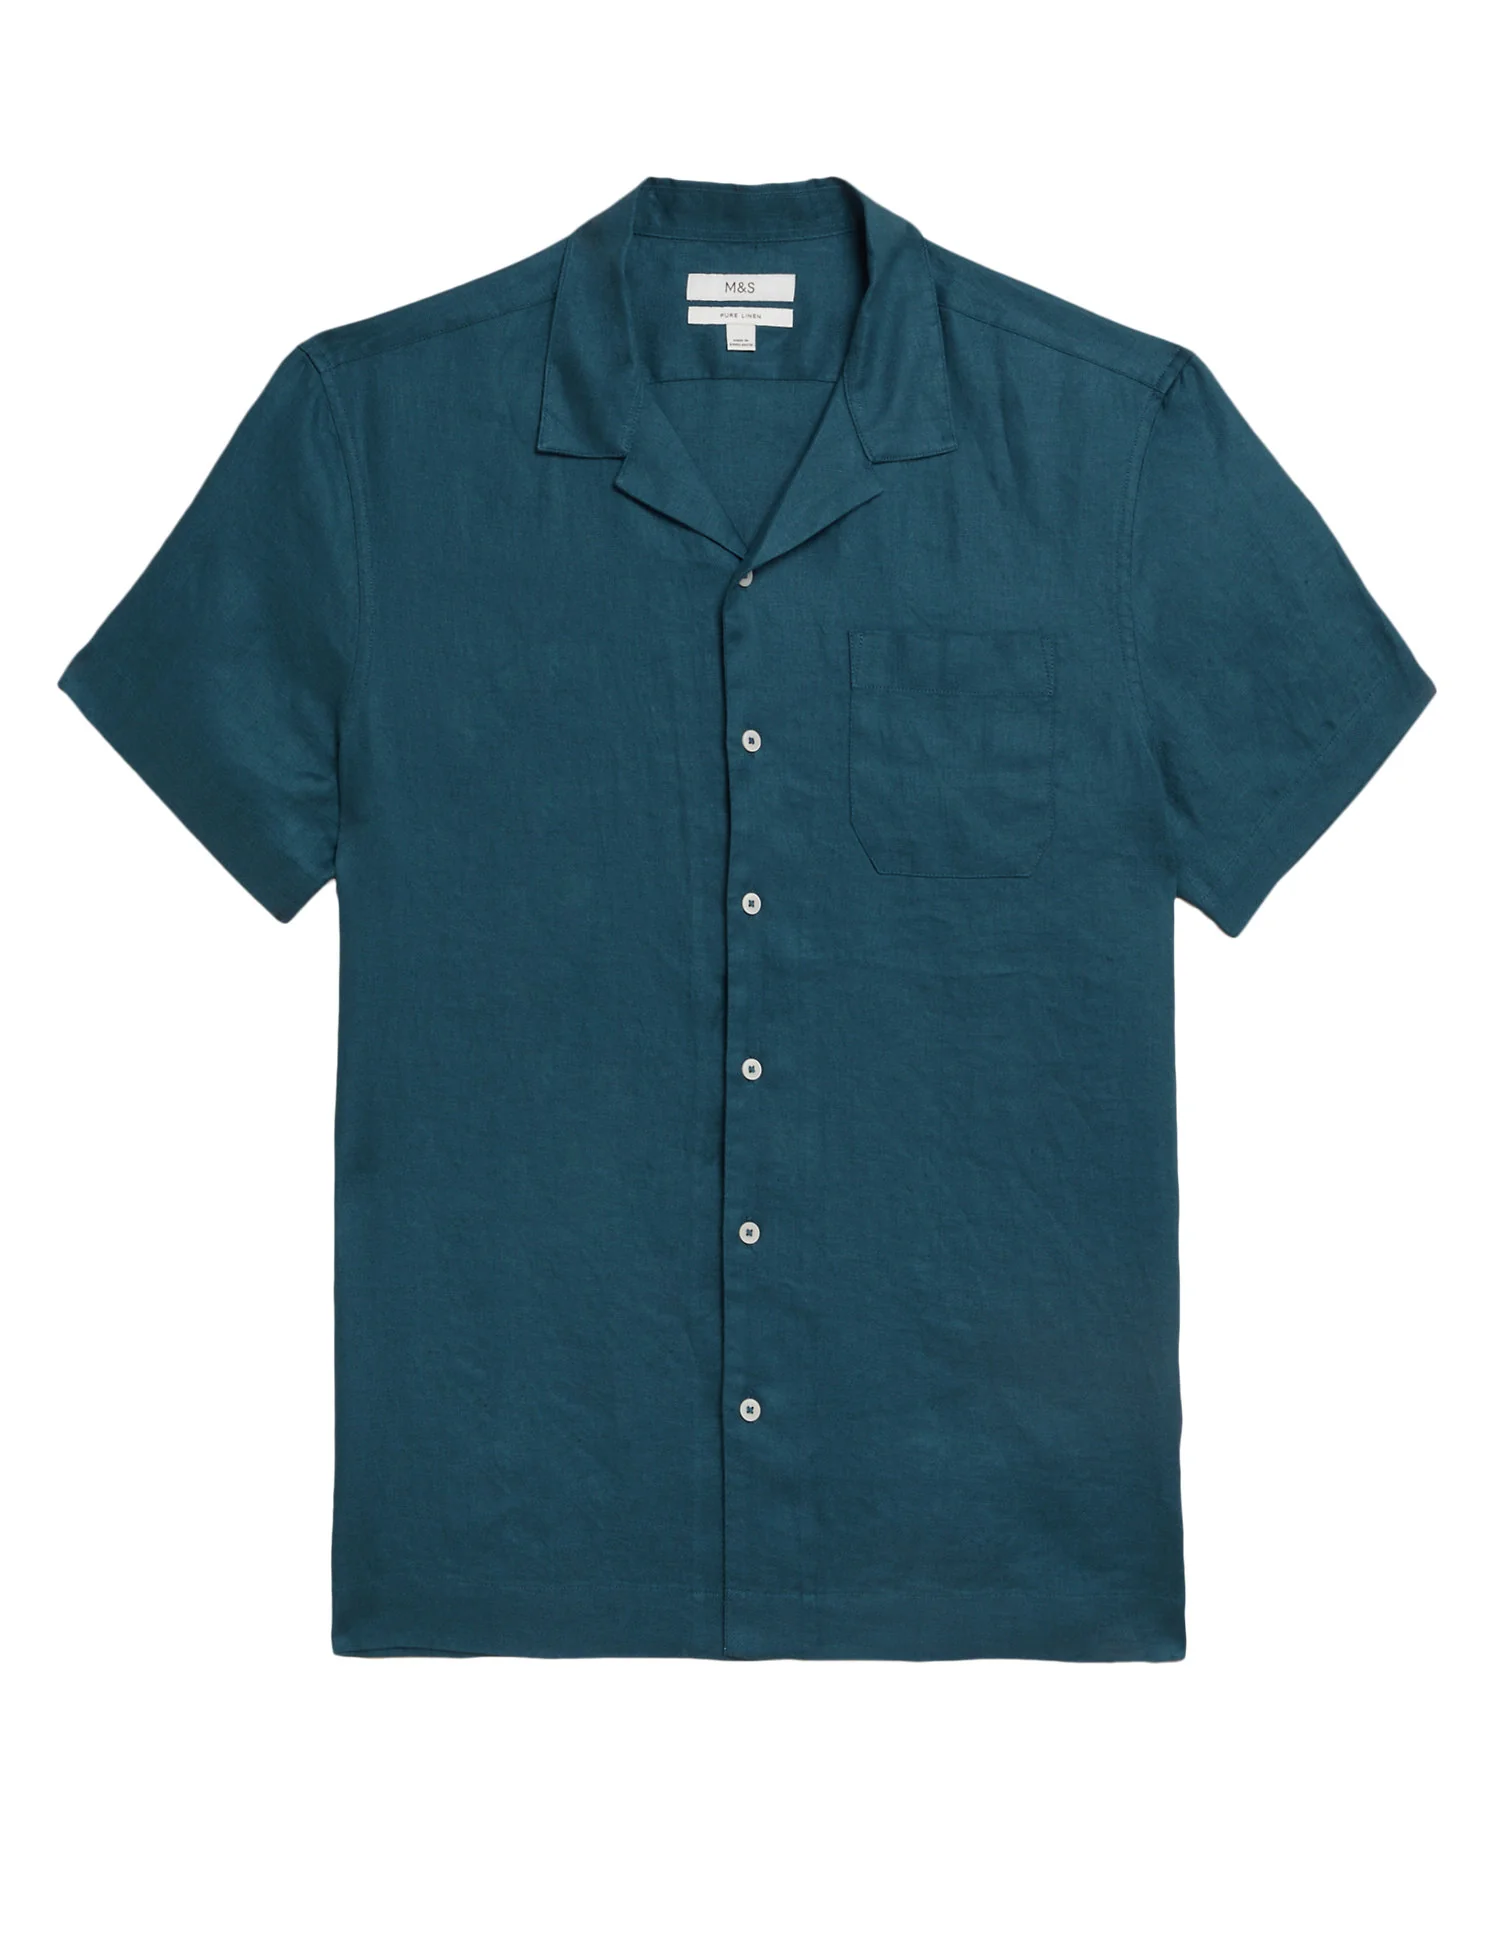 Linen Rich Revere Shirt ₱2,150.00 now P1,827.50.jpg